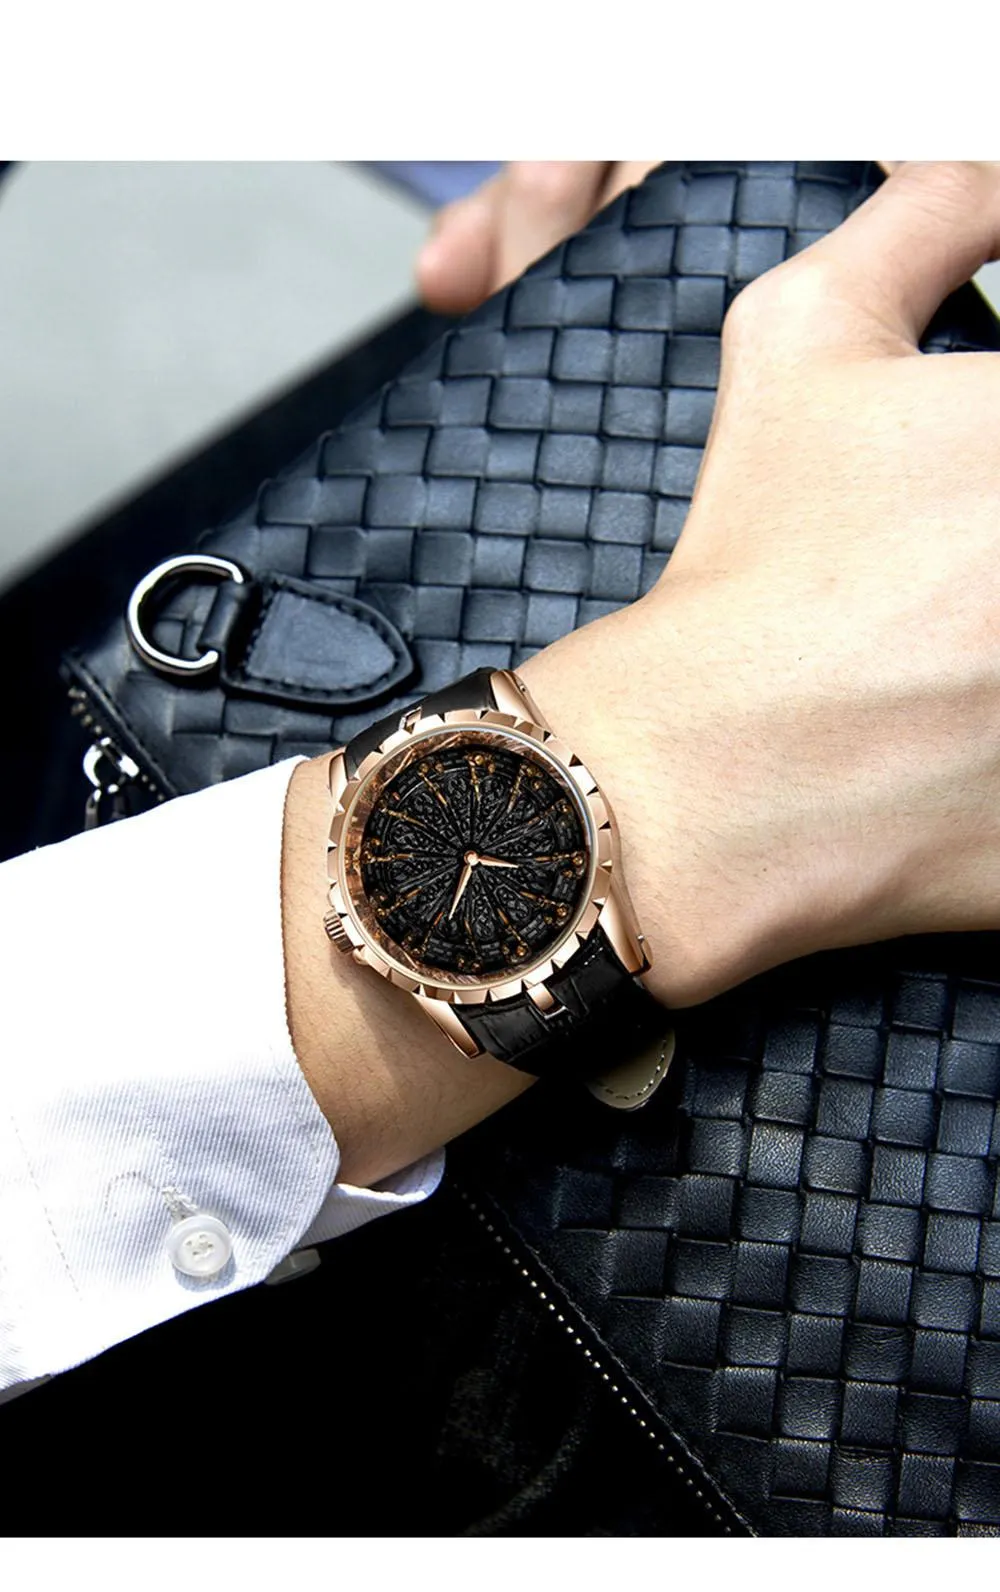 45mm12 рыцарь Роскошные Дизайнерские мужские часы EXCALIBUR Высокое качество черные кожаные кварцевые часы мужские деловые наручные часы мужские RDDBEX0